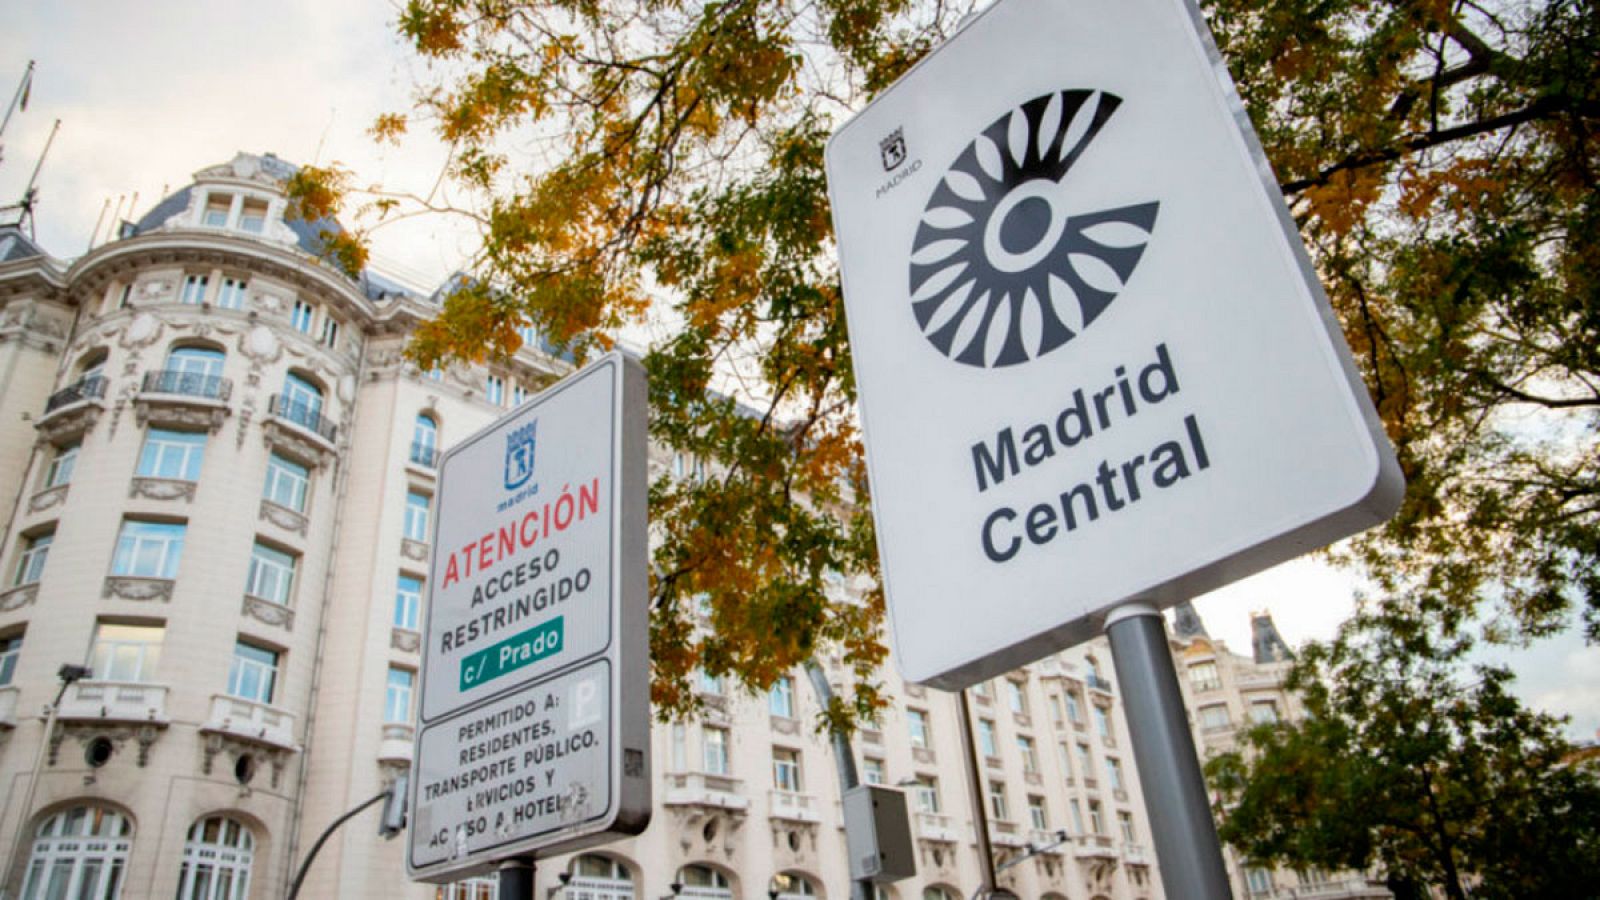 Cartel de señalización de entrada al perímetro de Madrid Central